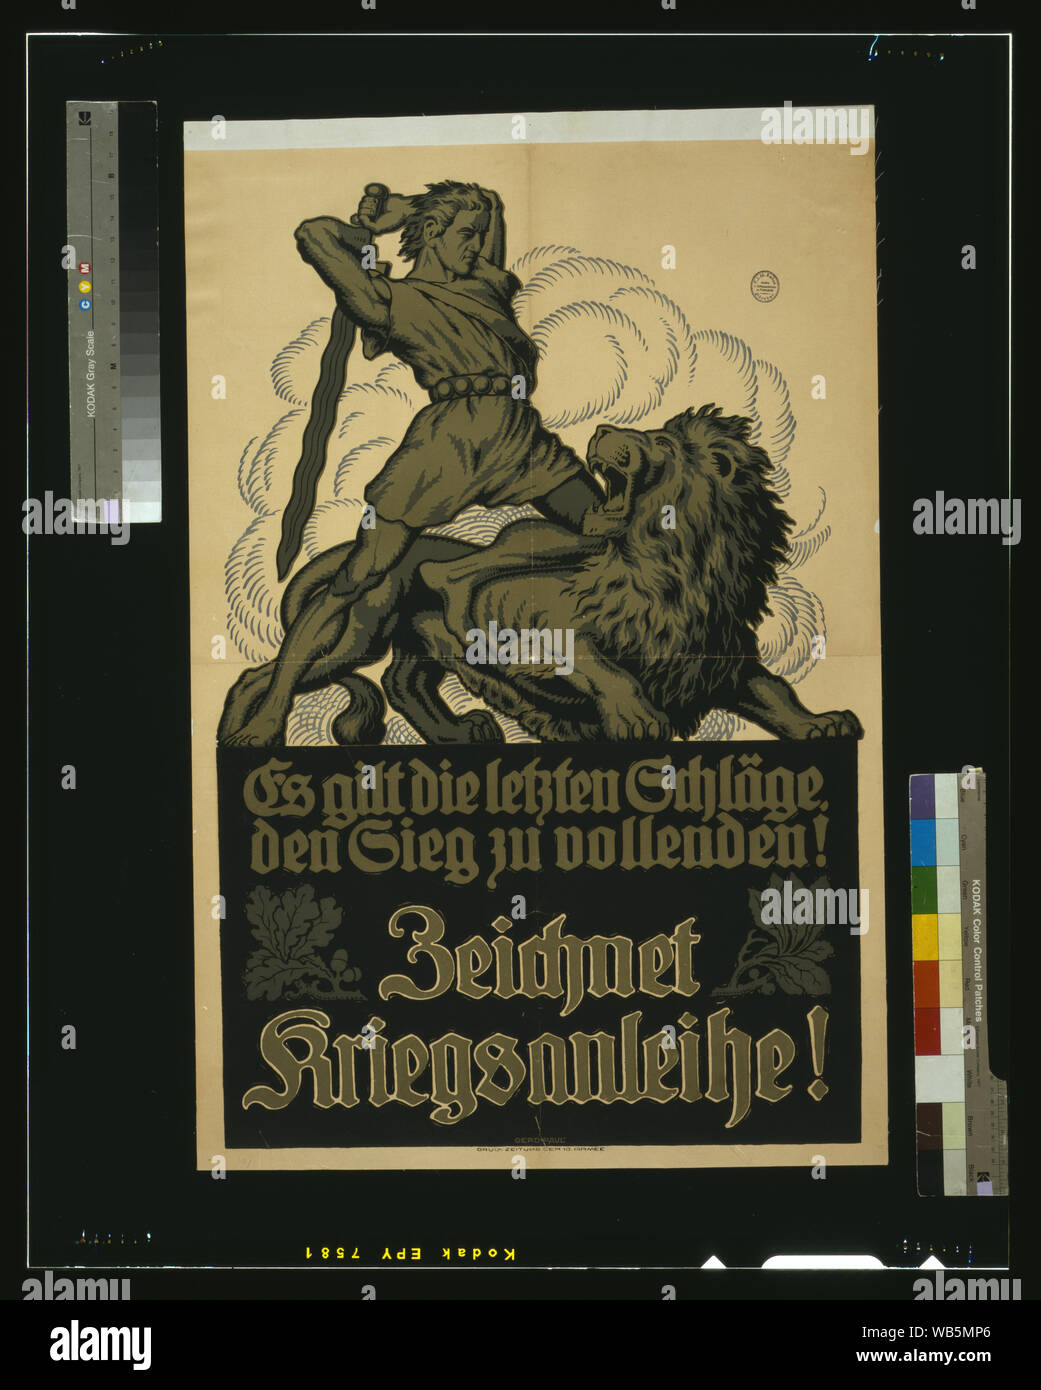 Es gilt die letzen Schläge, den Sieg zu vollenden! Zeichnet Kriegsanleihe! / Gerd Paul. Abstract/medium: 1 print (poster) : lithograph, color ; 86 x 58 cm. Stock Photo